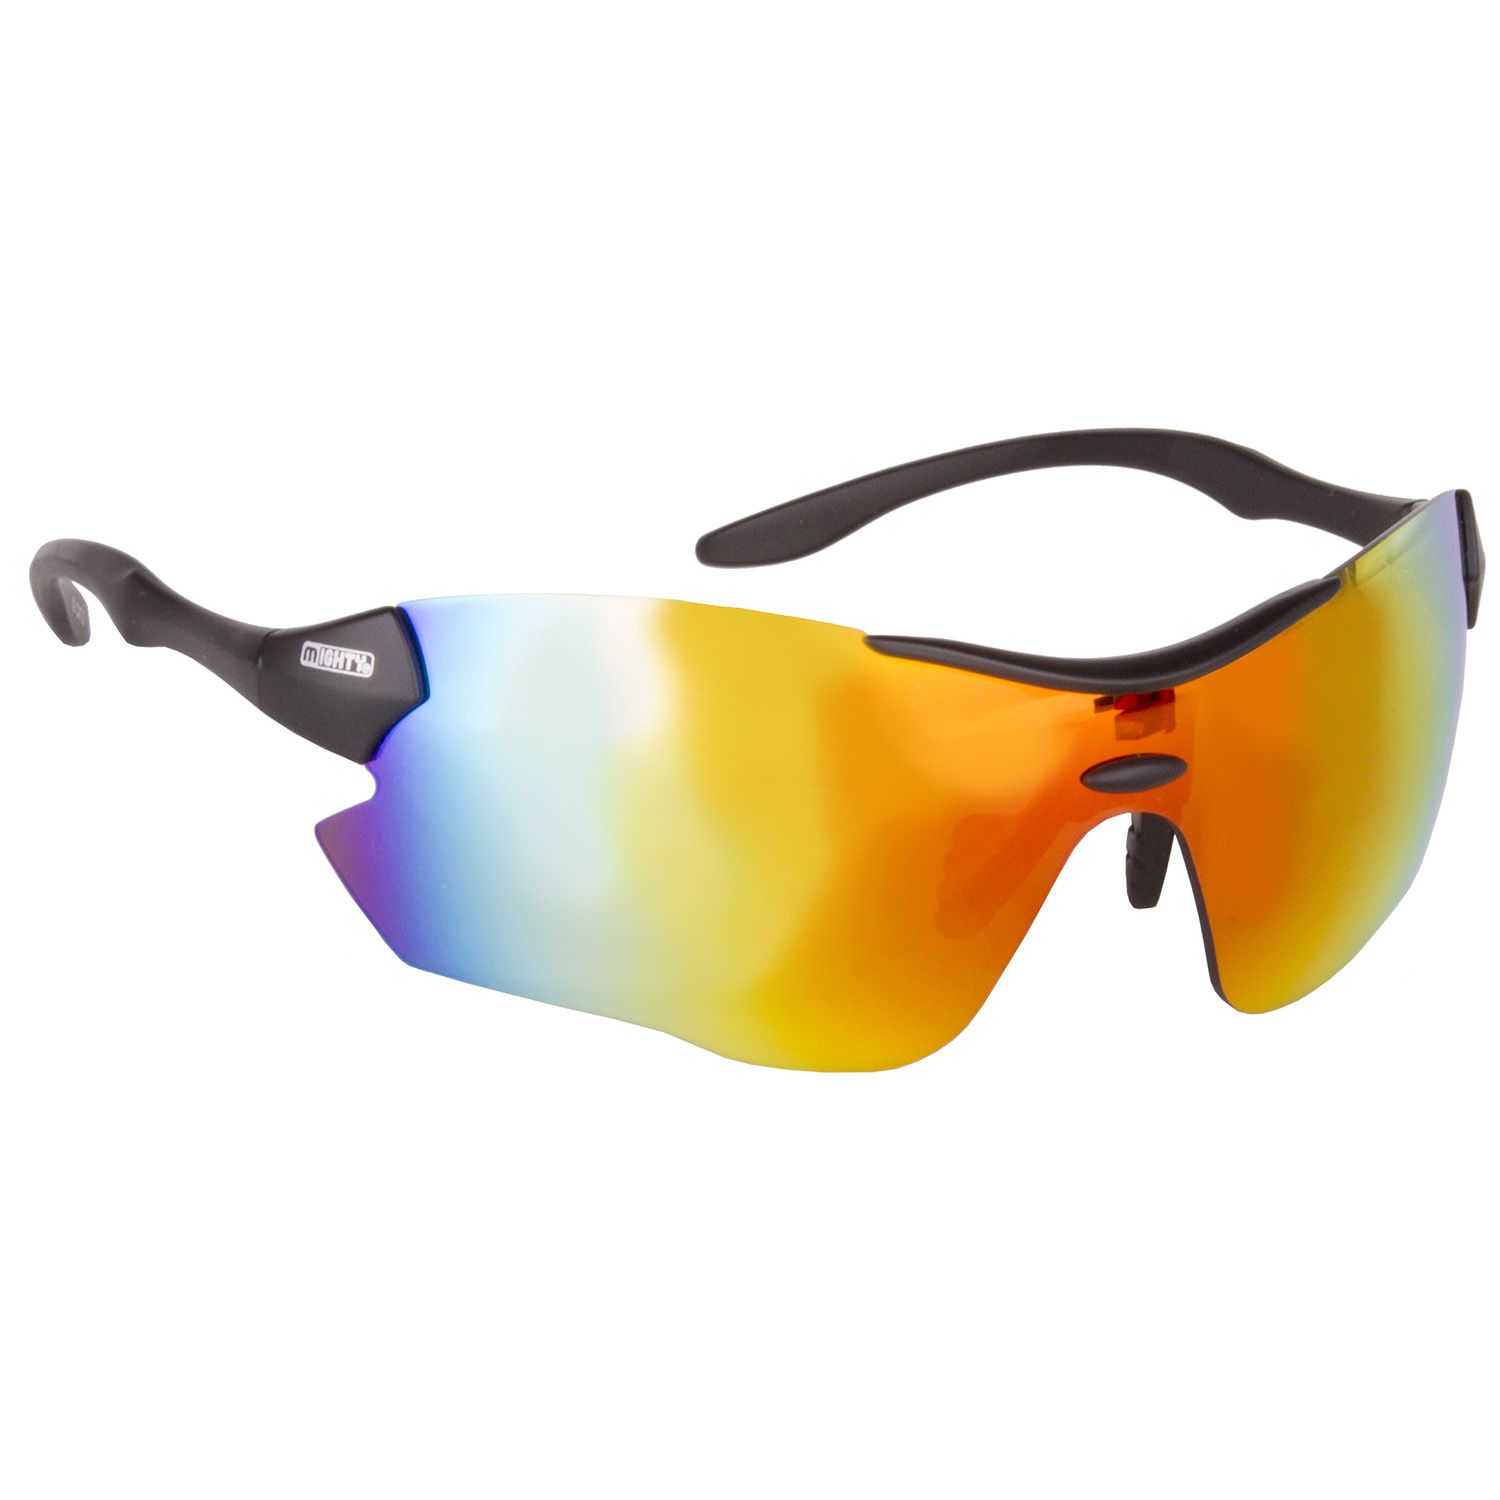 Rayon G4 sports cykelbrille m. udskifteligt glas.| Gratis fragt køb over 299,-